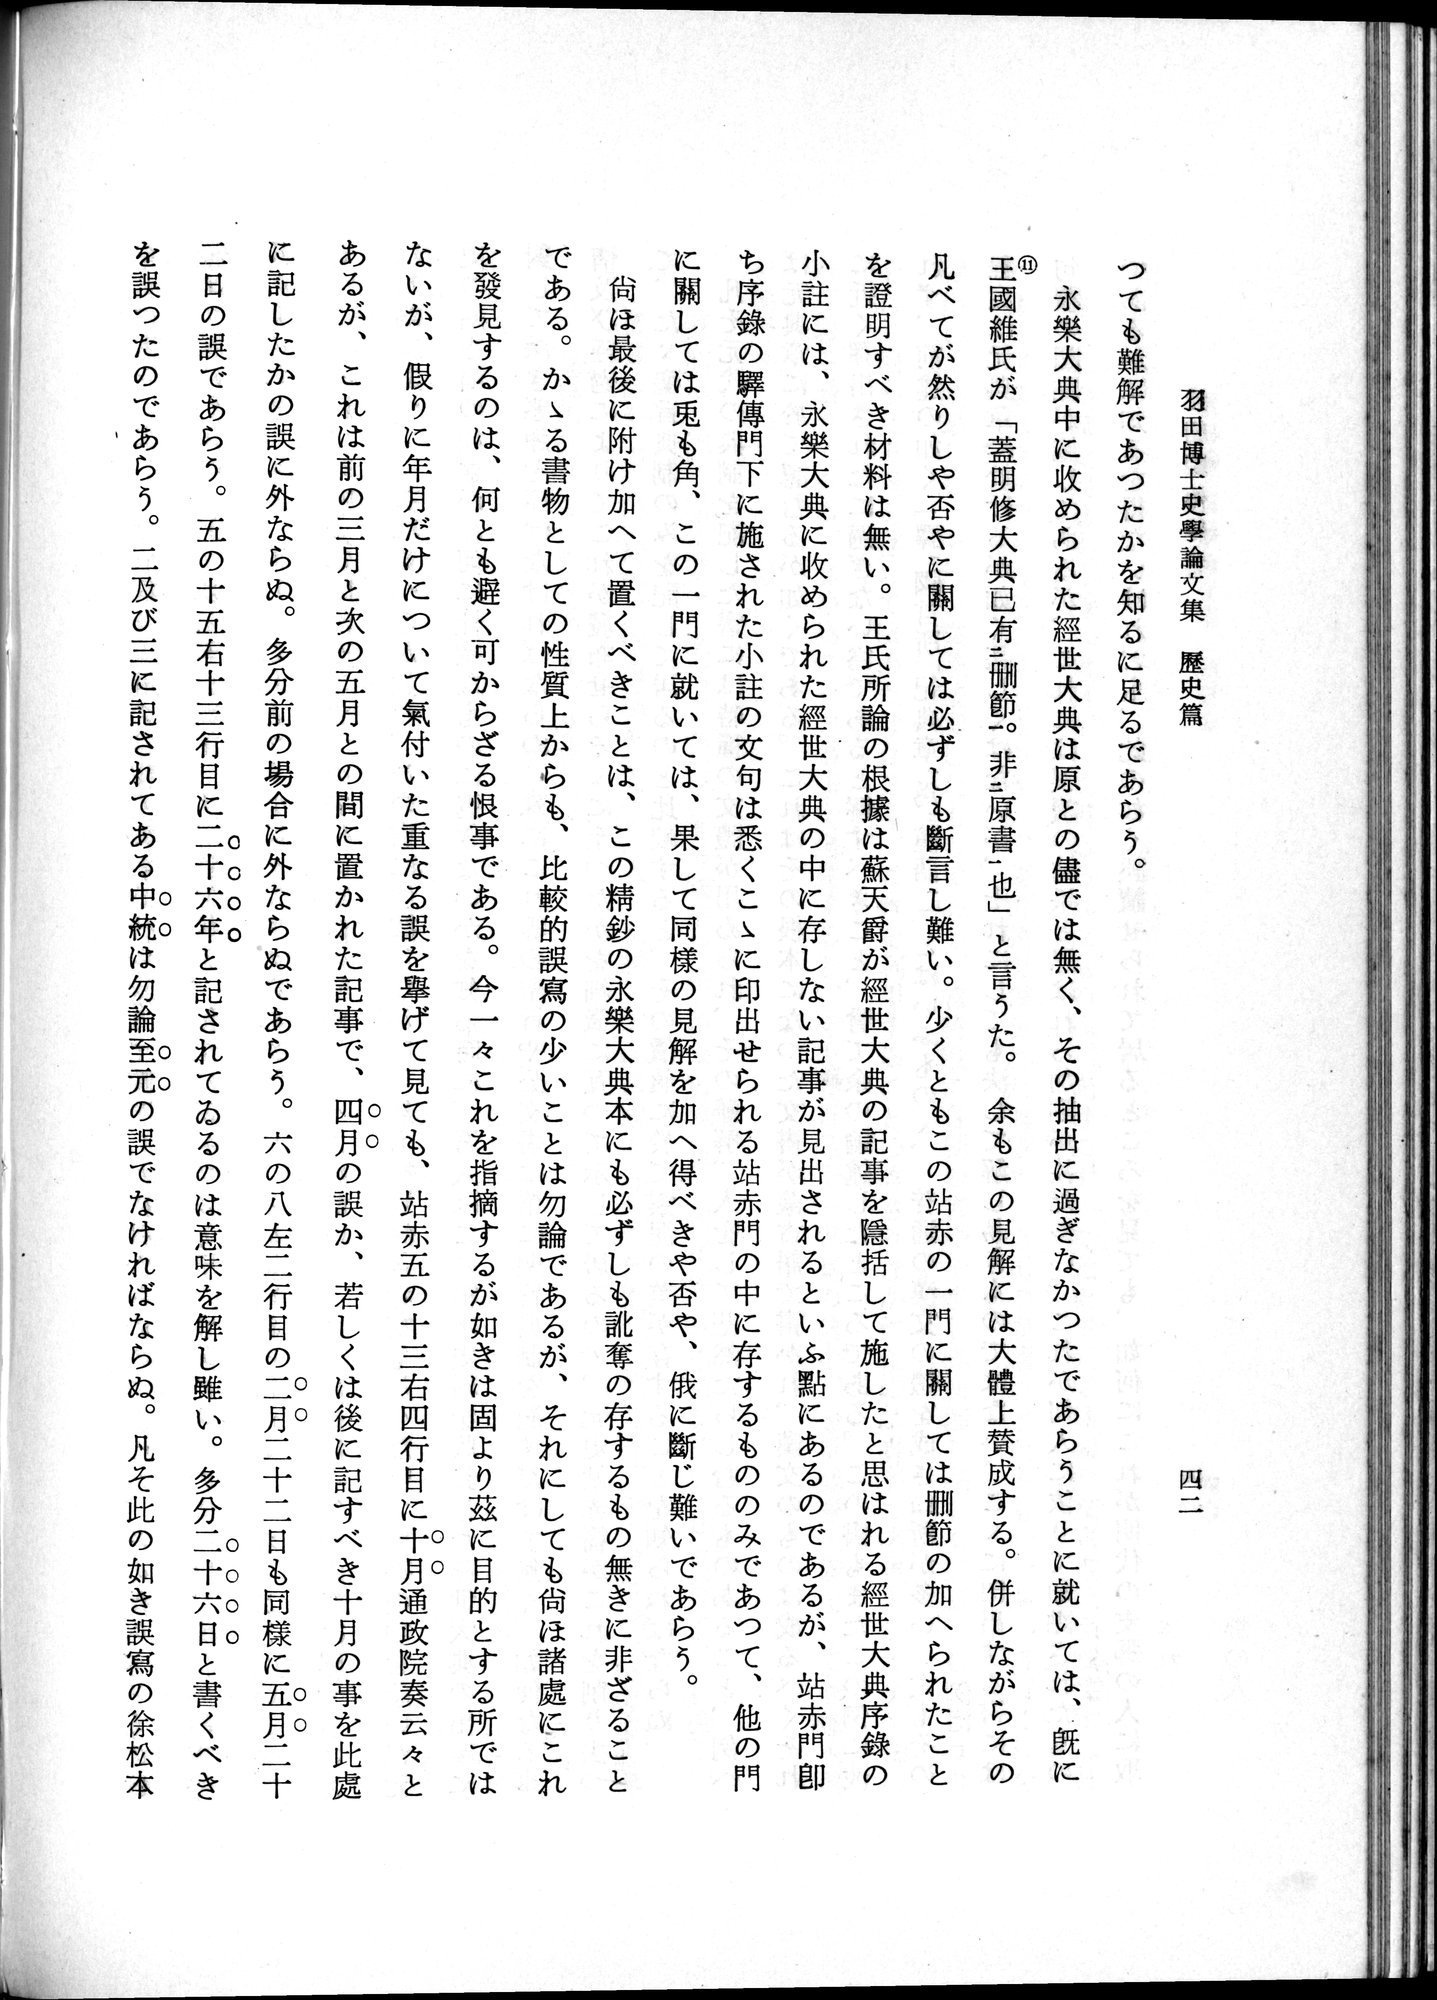 羽田博士史学論文集 : vol.1 / Page 80 (Grayscale High Resolution Image)